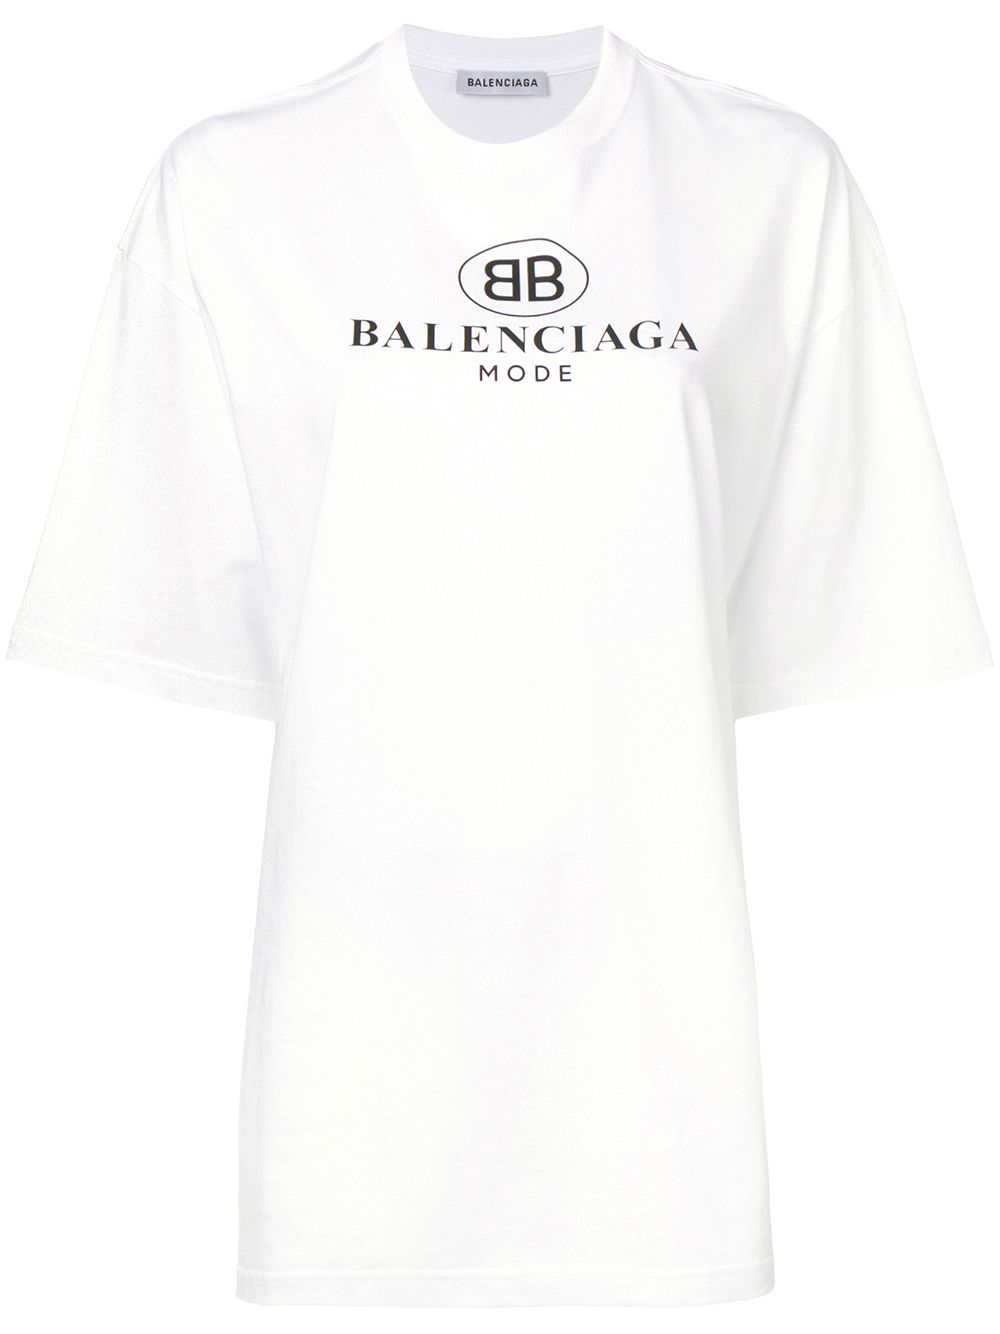 фото Balenciaga футболка 'bb mode'